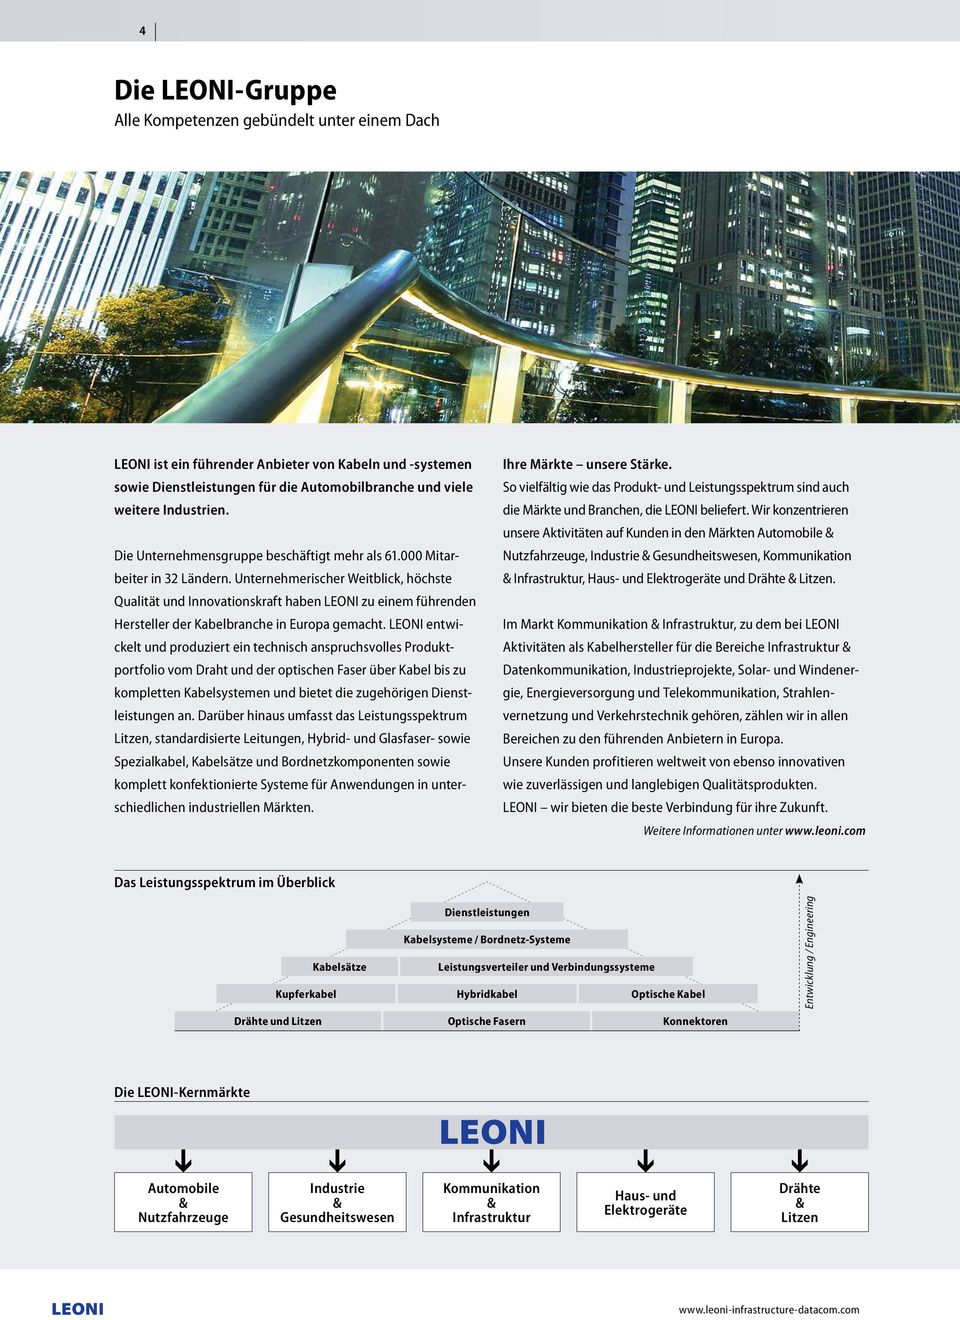 Unternehmerischer Weitblick, höchste Qualität und Innovationskraft haben LEONI zu einem führenden Hersteller der Kabelbranche in Europa gemacht.